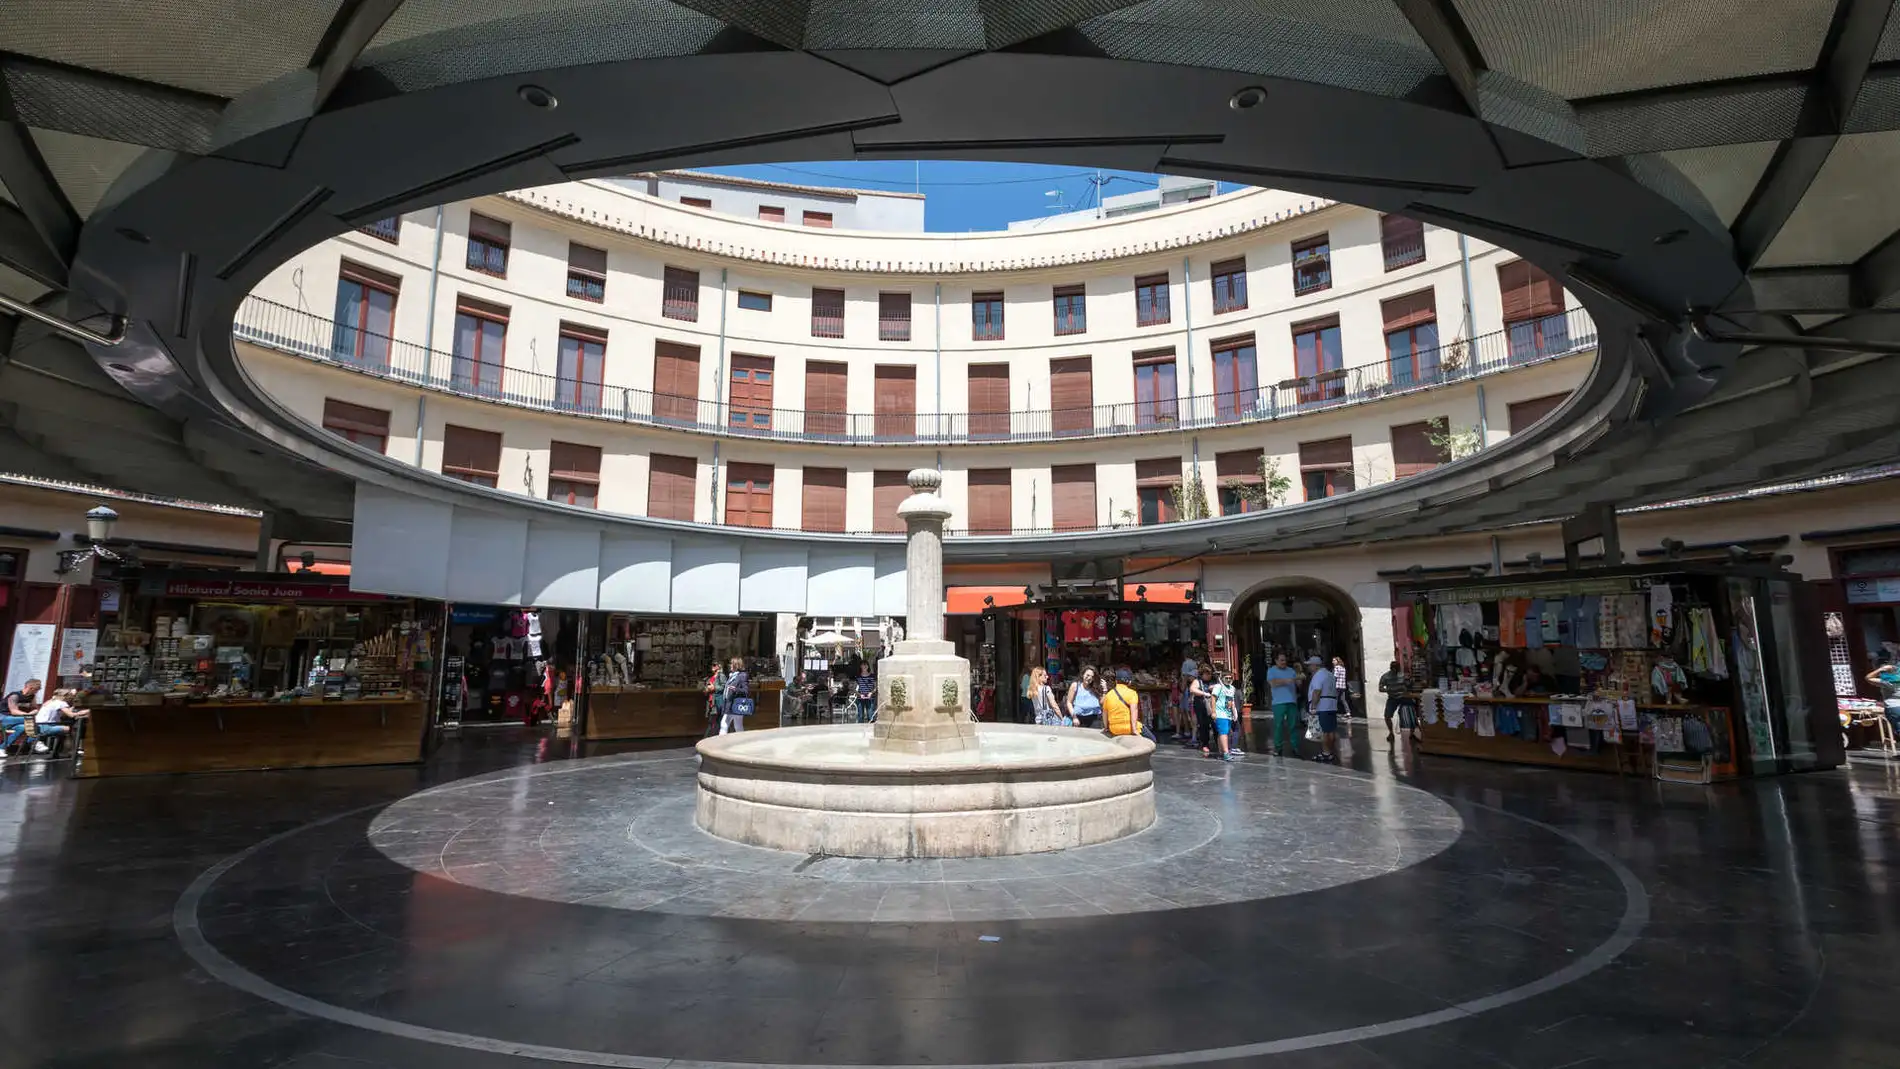 Imagen de la casi invisible plaza en el centro de Valencia